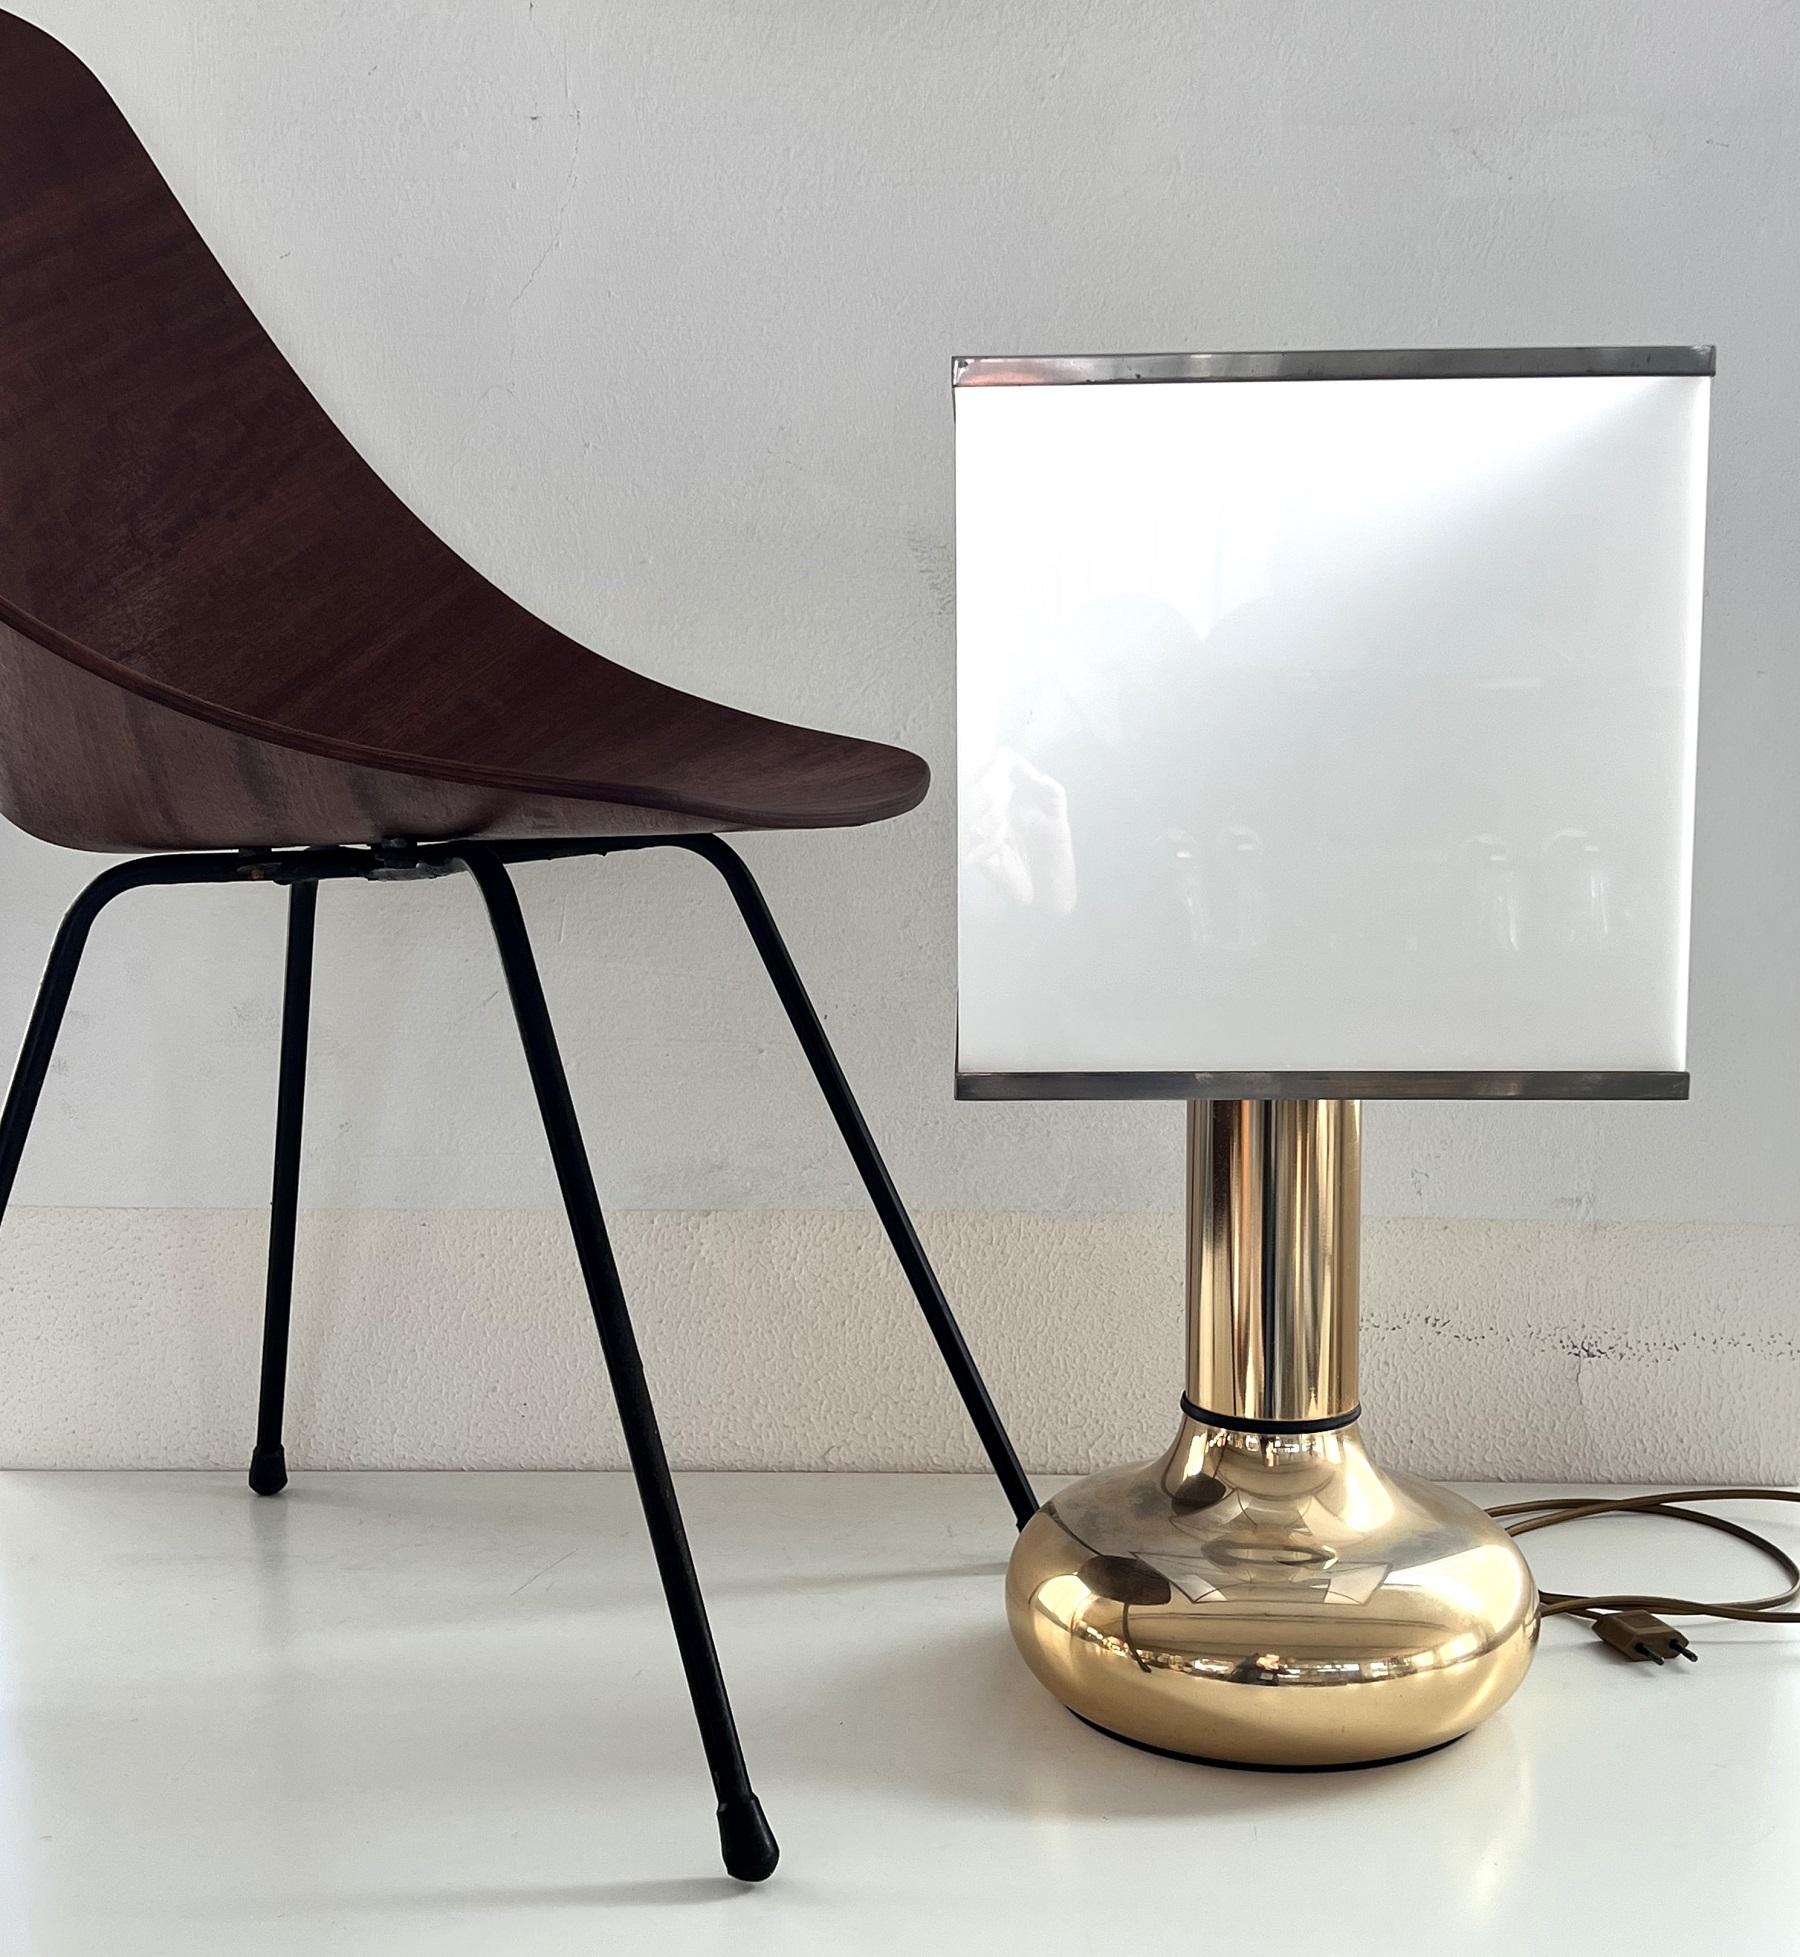 Magnifique lampe de table composée d'une base en métal avec finition en laiton dans le style typique des années 70 italiennes.
Fabriqué par Lampter Milano (voir étiquette)
L'abat-jour carré est en plexiglas (plastique) blanc opalin avec des bordures